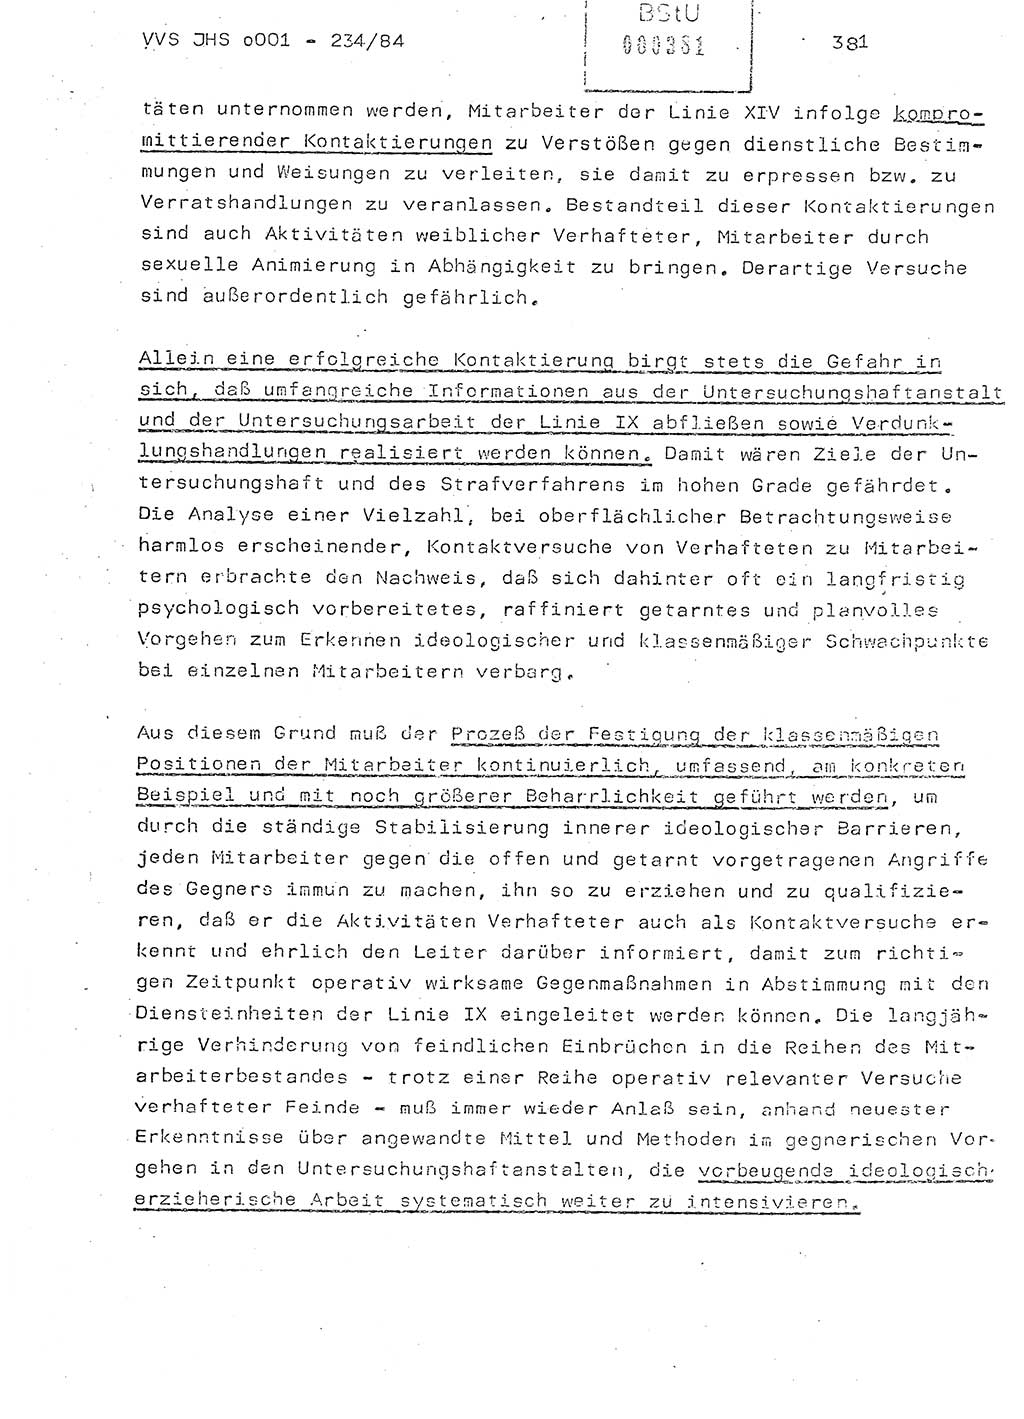 Dissertation Oberst Siegfried Rataizick (Abt. ⅩⅣ), Oberstleutnant Volkmar Heinz (Abt. ⅩⅣ), Oberstleutnant Werner Stein (HA Ⅸ), Hauptmann Heinz Conrad (JHS), Ministerium für Staatssicherheit (MfS) [Deutsche Demokratische Republik (DDR)], Juristische Hochschule (JHS), Vertrauliche Verschlußsache (VVS) o001-234/84, Potsdam 1984, Seite 381 (Diss. MfS DDR JHS VVS o001-234/84 1984, S. 381)